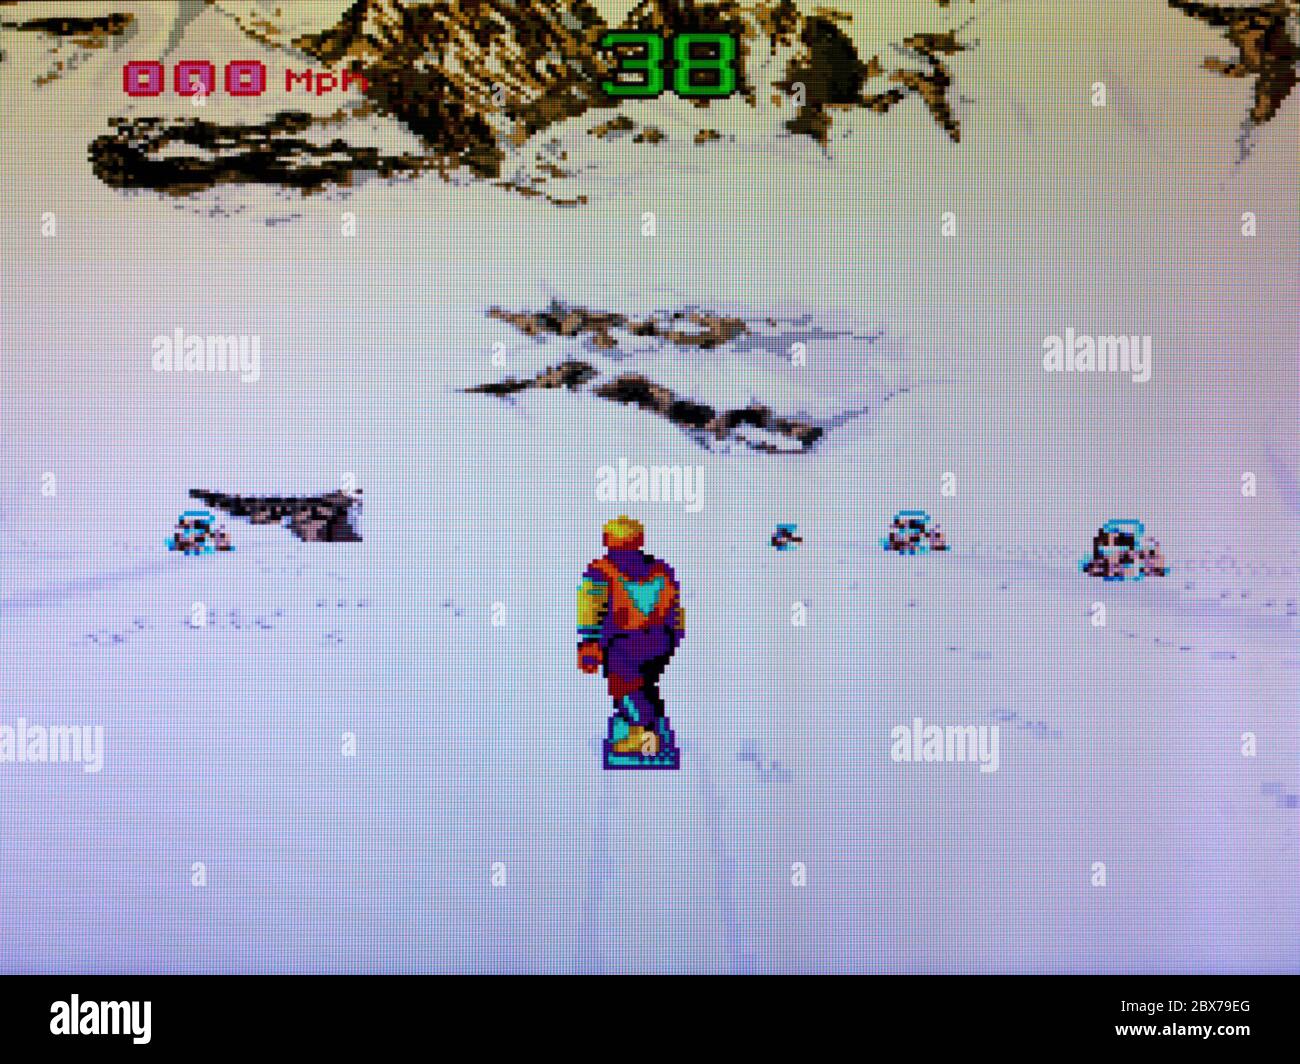 Winter Extreme Ski und Snowboard - SNES Super Nintendo - nur zur redaktionellen Verwendung Stockfoto